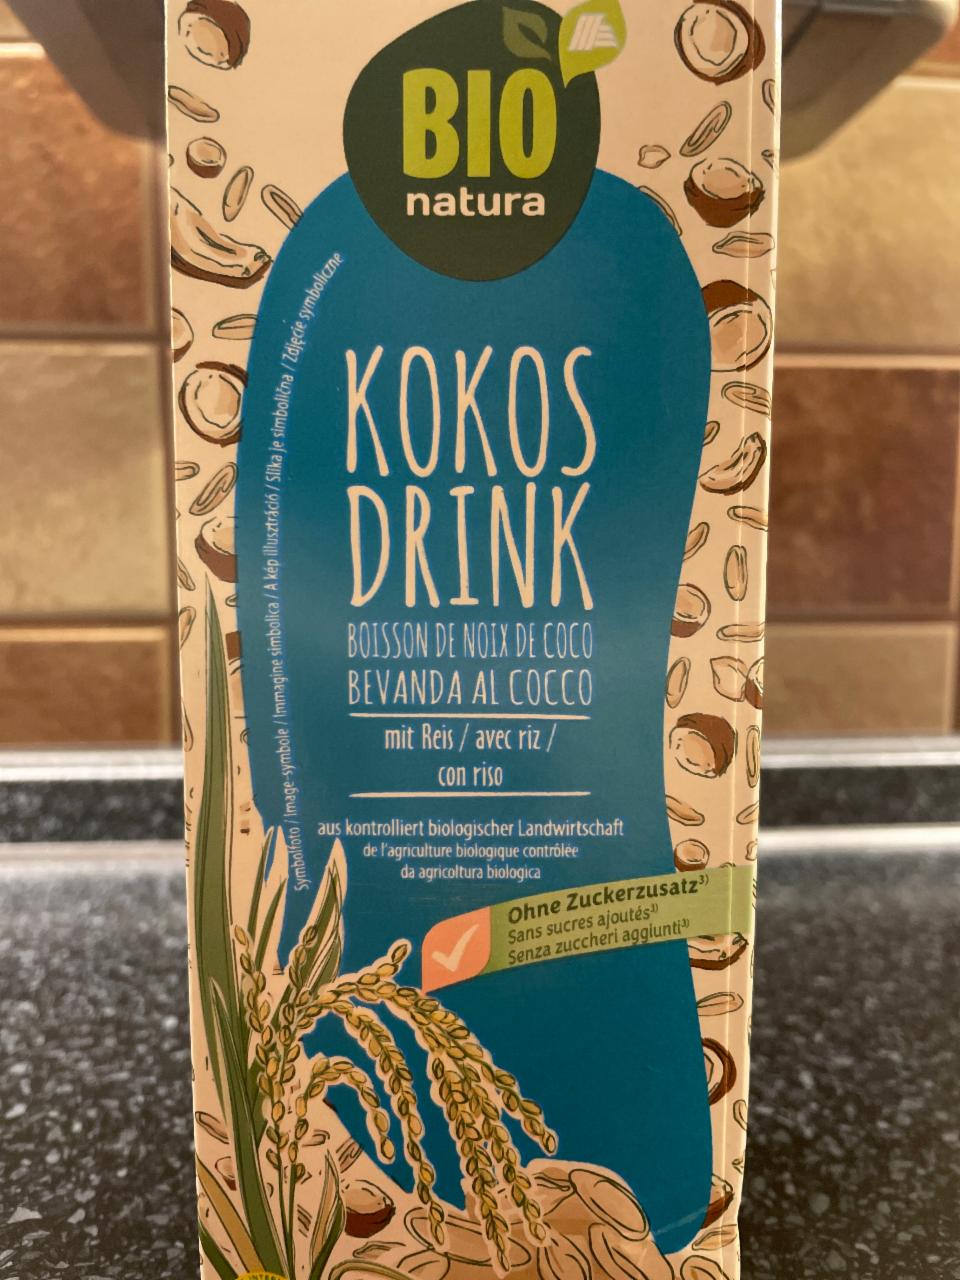 Fotografie - kokos drink mit Reis bio natura